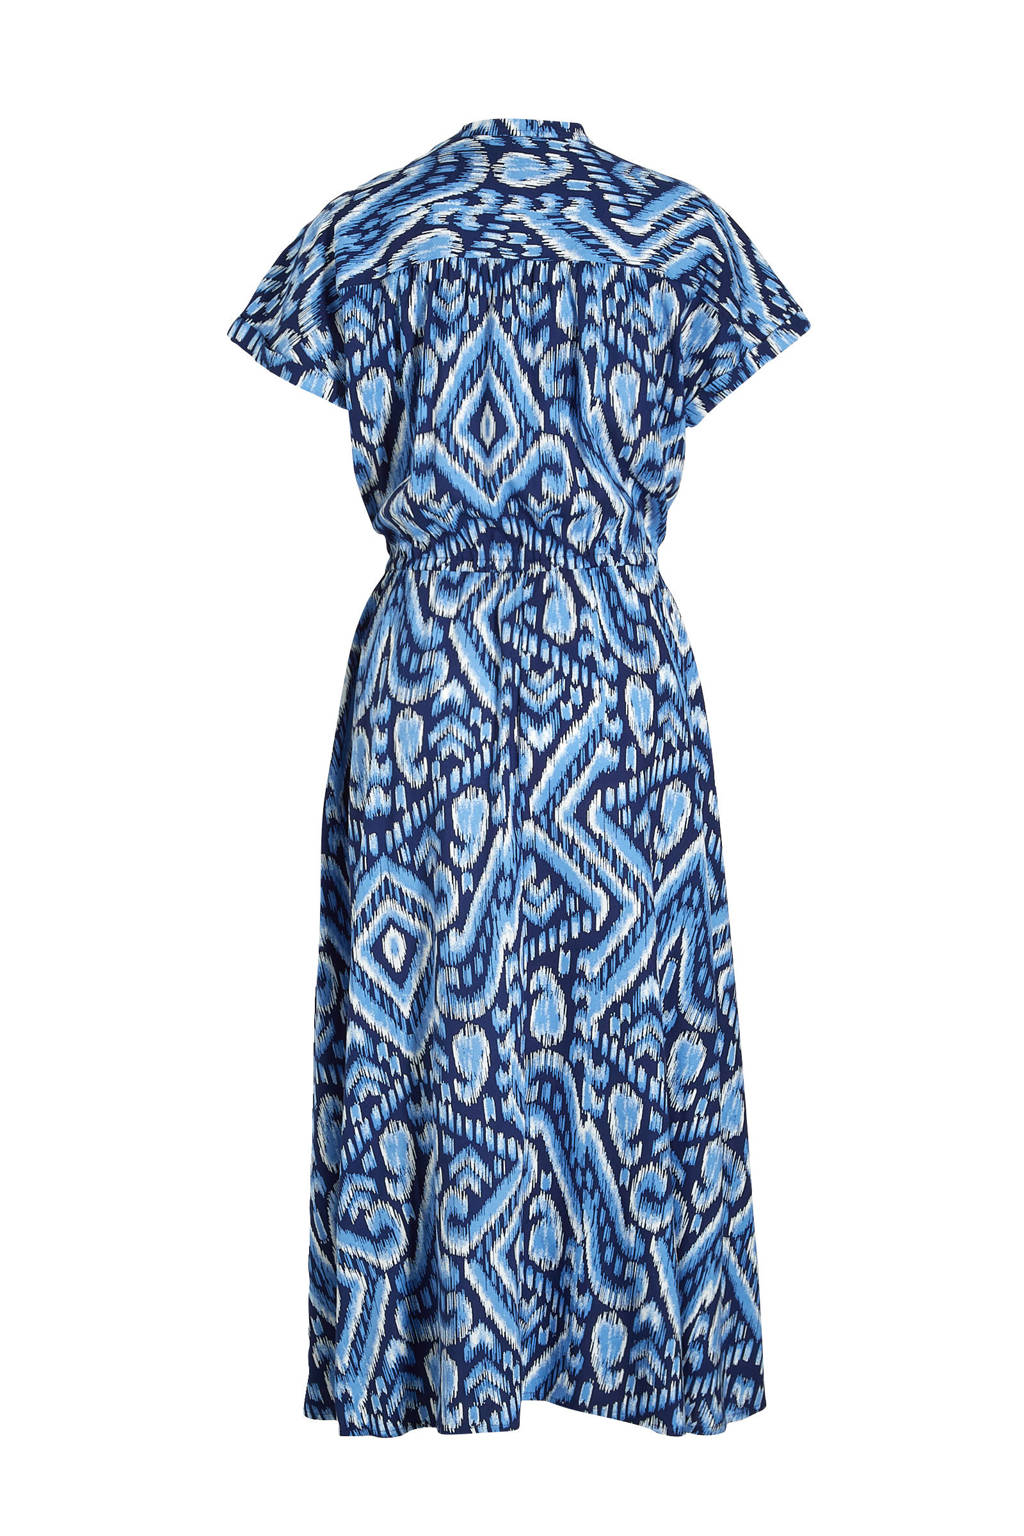 bewonderen bleek Reiziger Miljuschka by Wehkamp midi jurk met abstracte print blauw | wehkamp